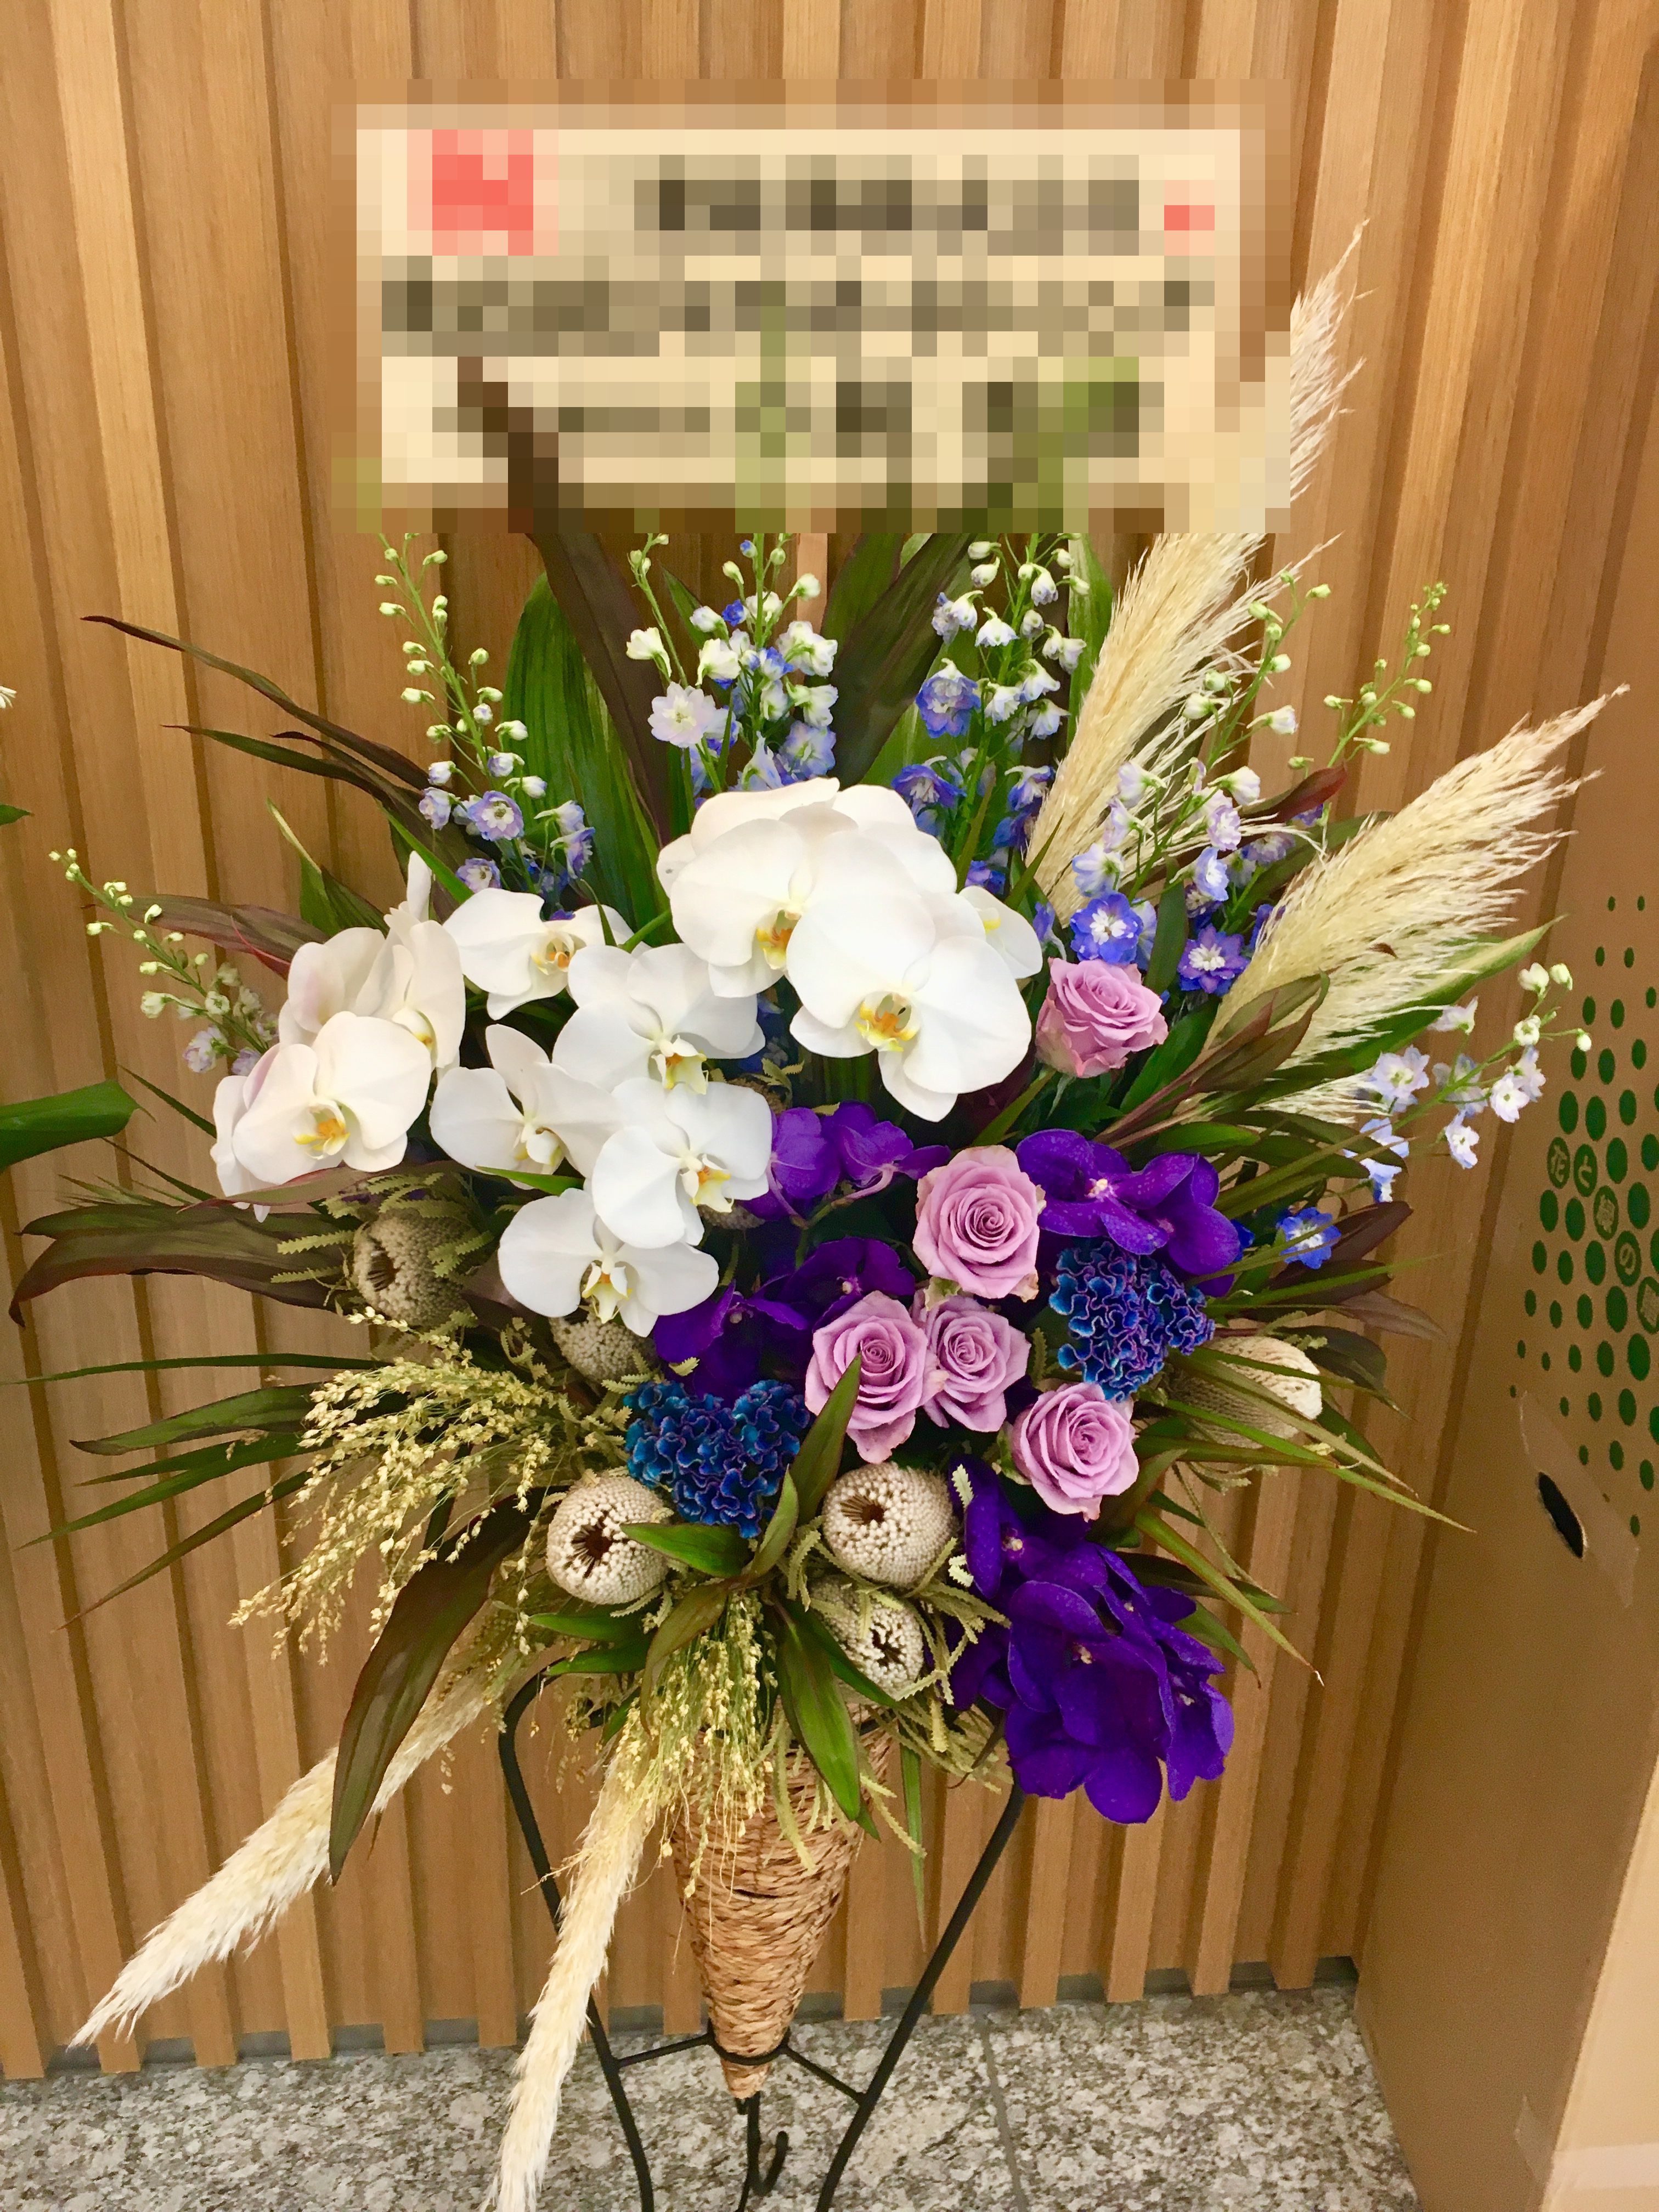 ナオ花屋の納品事例108 横浜市関内弁天通の法人企業様へスタンド花を配達しました 横浜の花屋florist Naoは無料配達 関内 みなとみらいなど配達実績多数